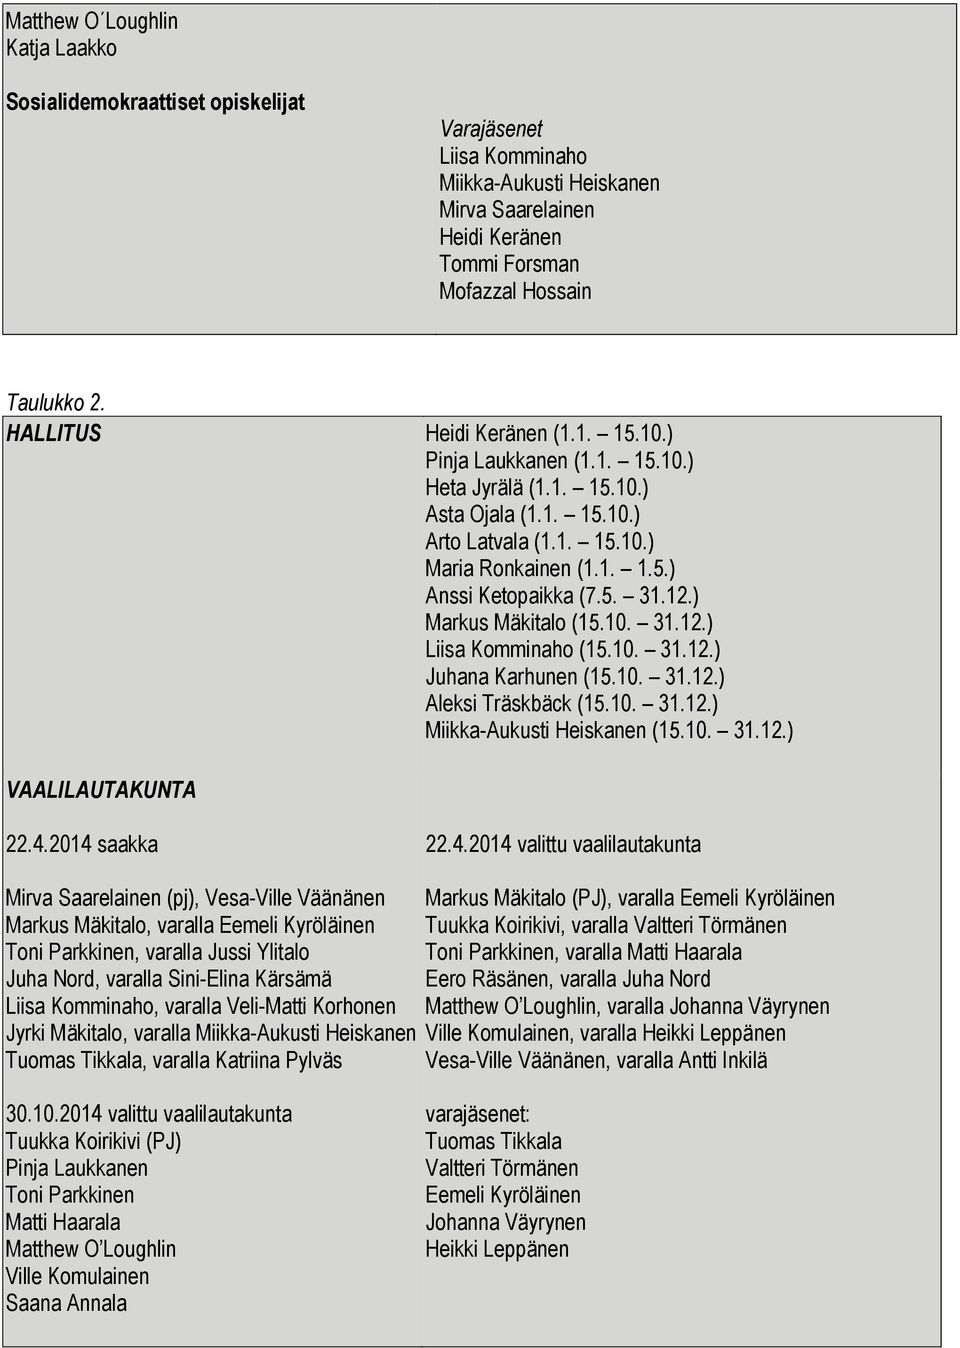 12.) Markus Mäkitalo (15.10. 31.12.) Liisa Komminaho (15.10. 31.12.) Juhana Karhunen (15.10. 31.12.) Aleksi Träskbäck (15.10. 31.12.) Miikka-Aukusti Heiskanen (15.10. 31.12.) VAALILAUTAKUNTA 22.4.